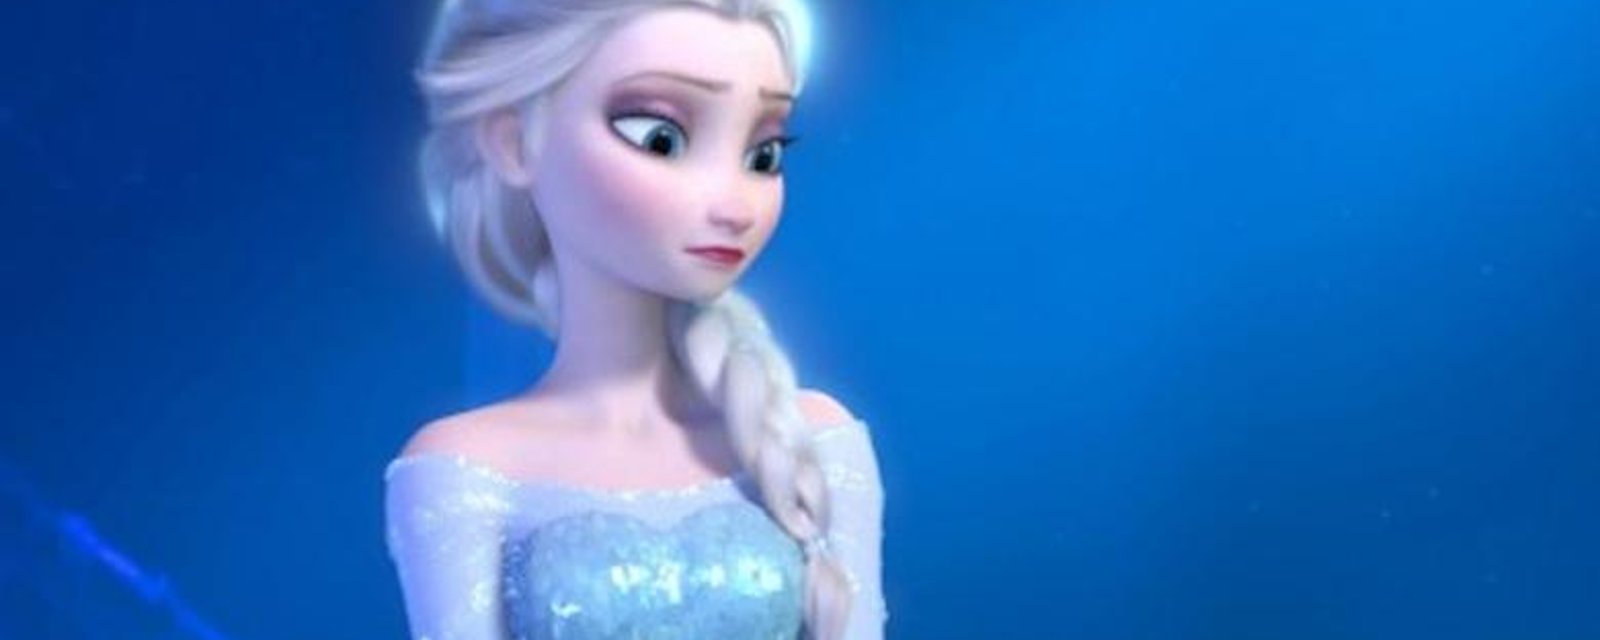 Elsa, la reine des neiges, serait lesbienne